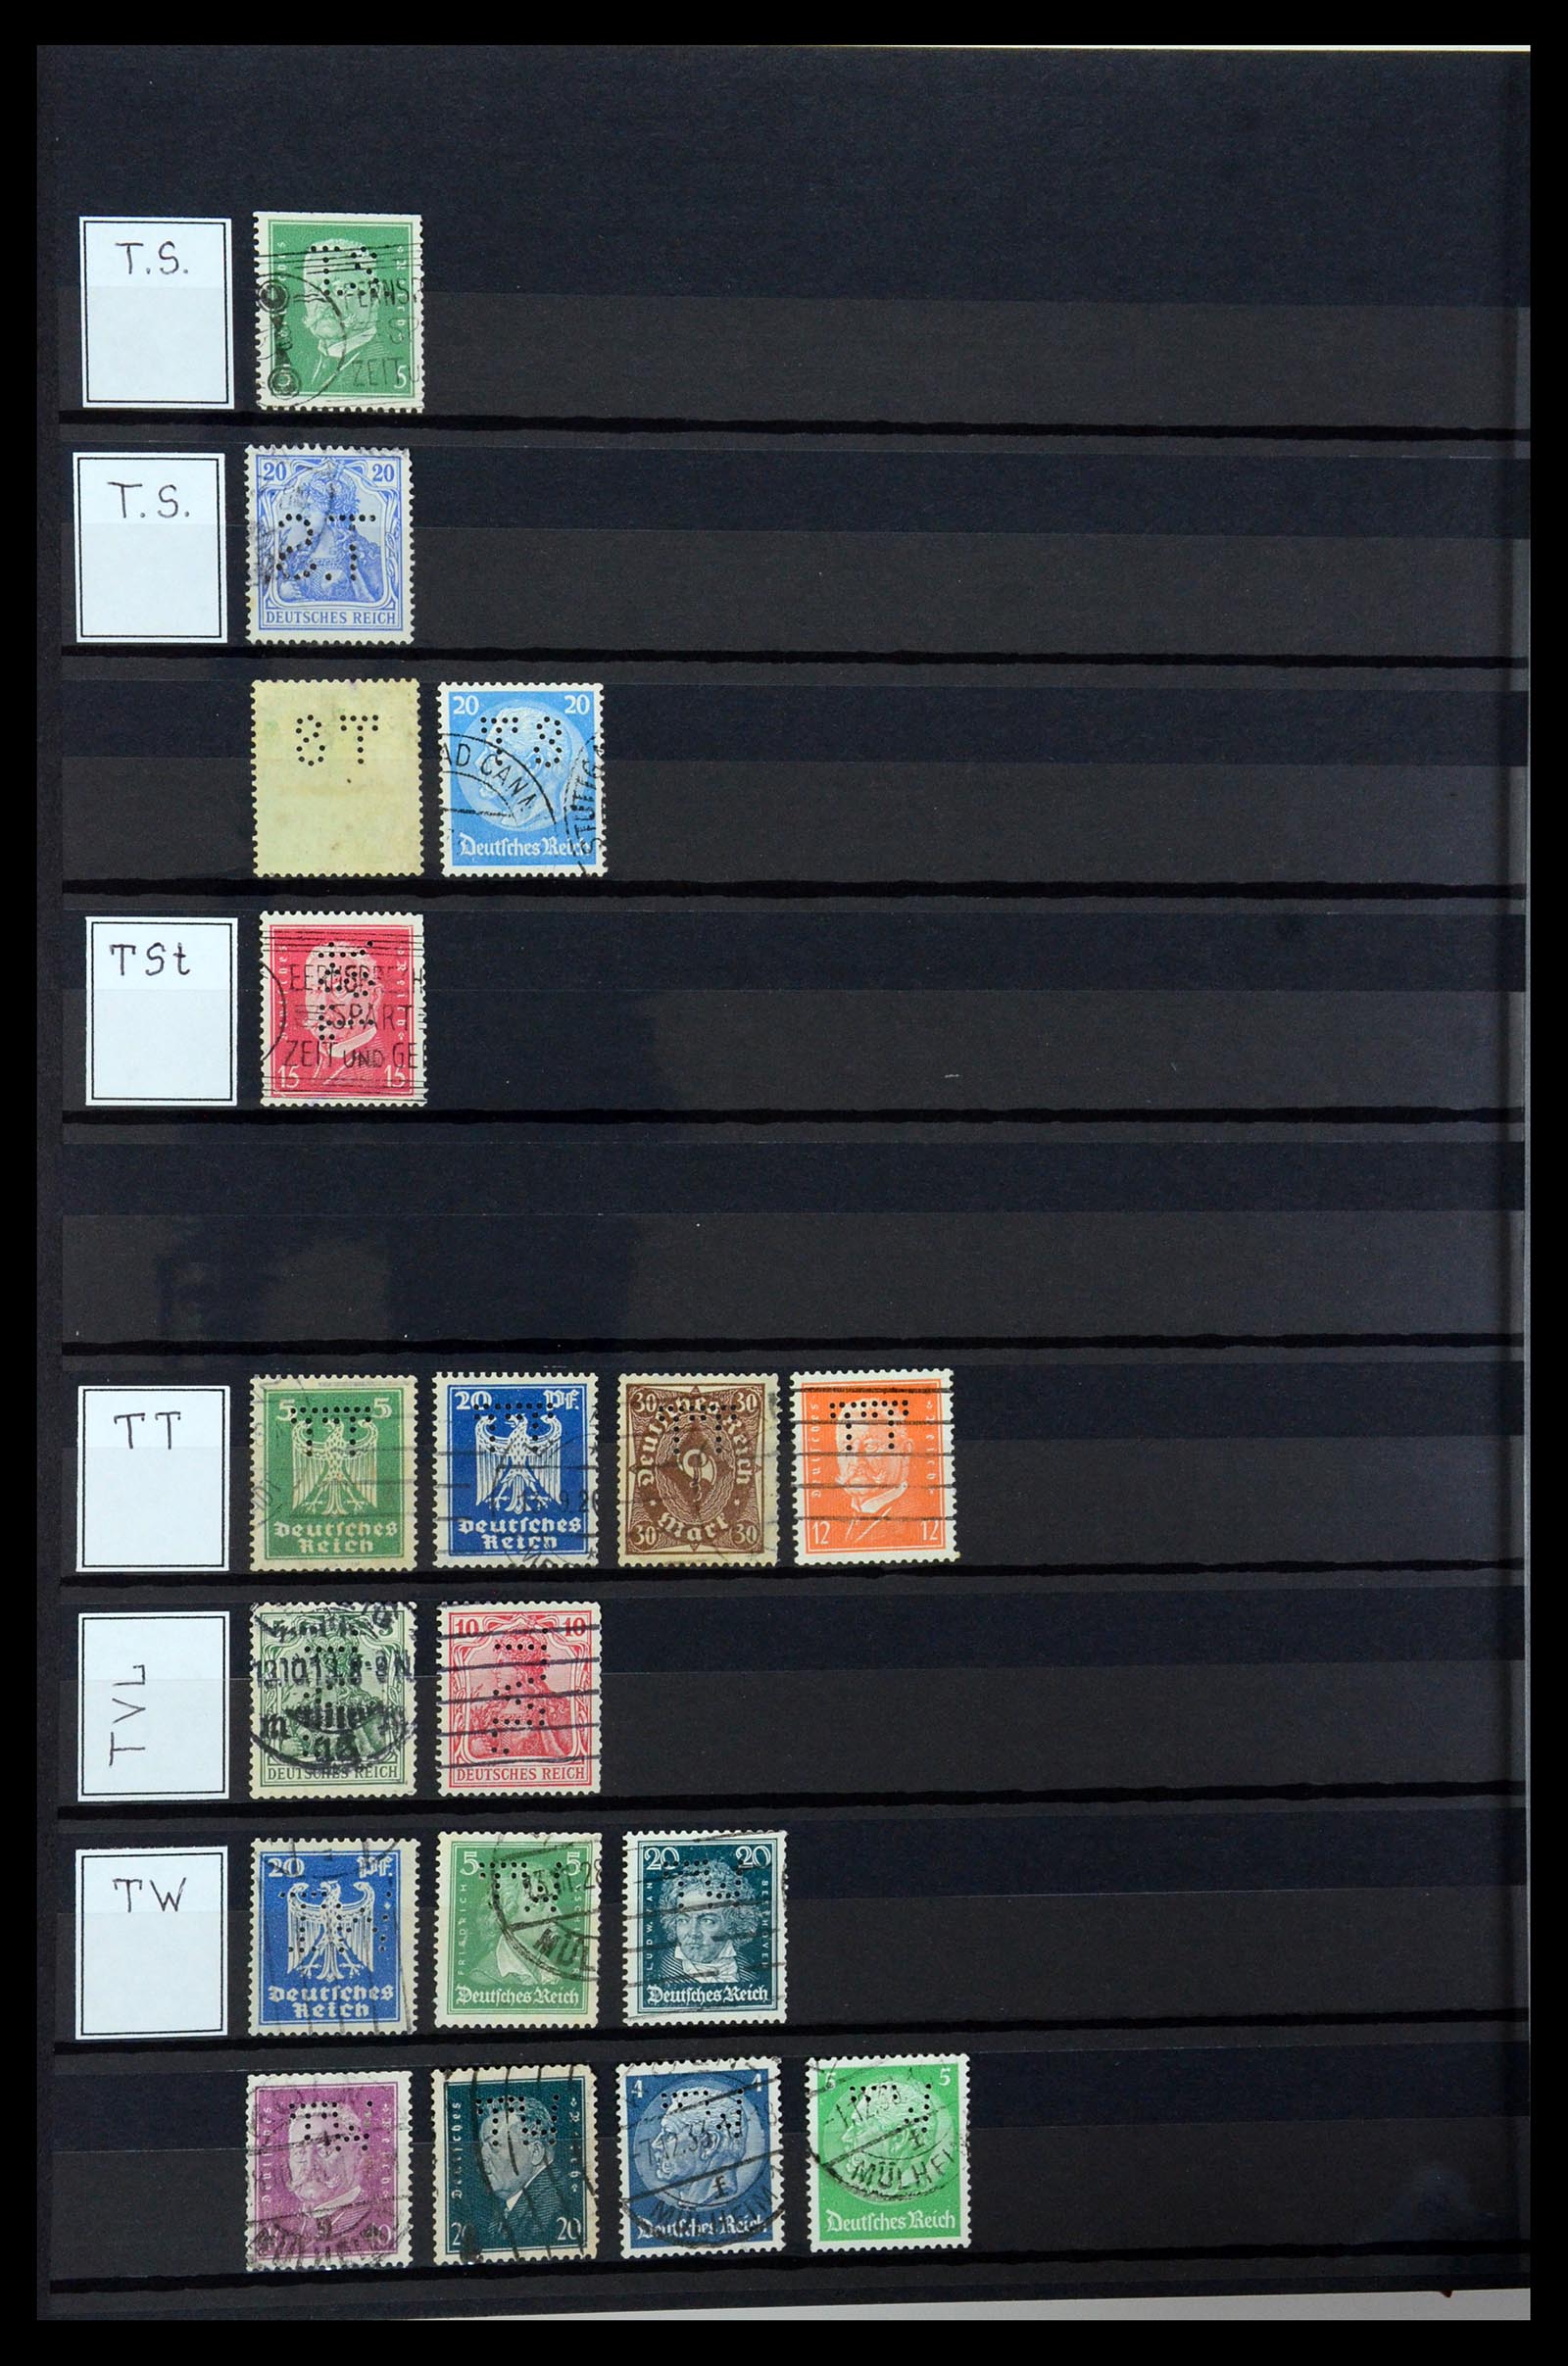 36405 315 - Stamp collection 36405 German Reich perfins 1880-1945.